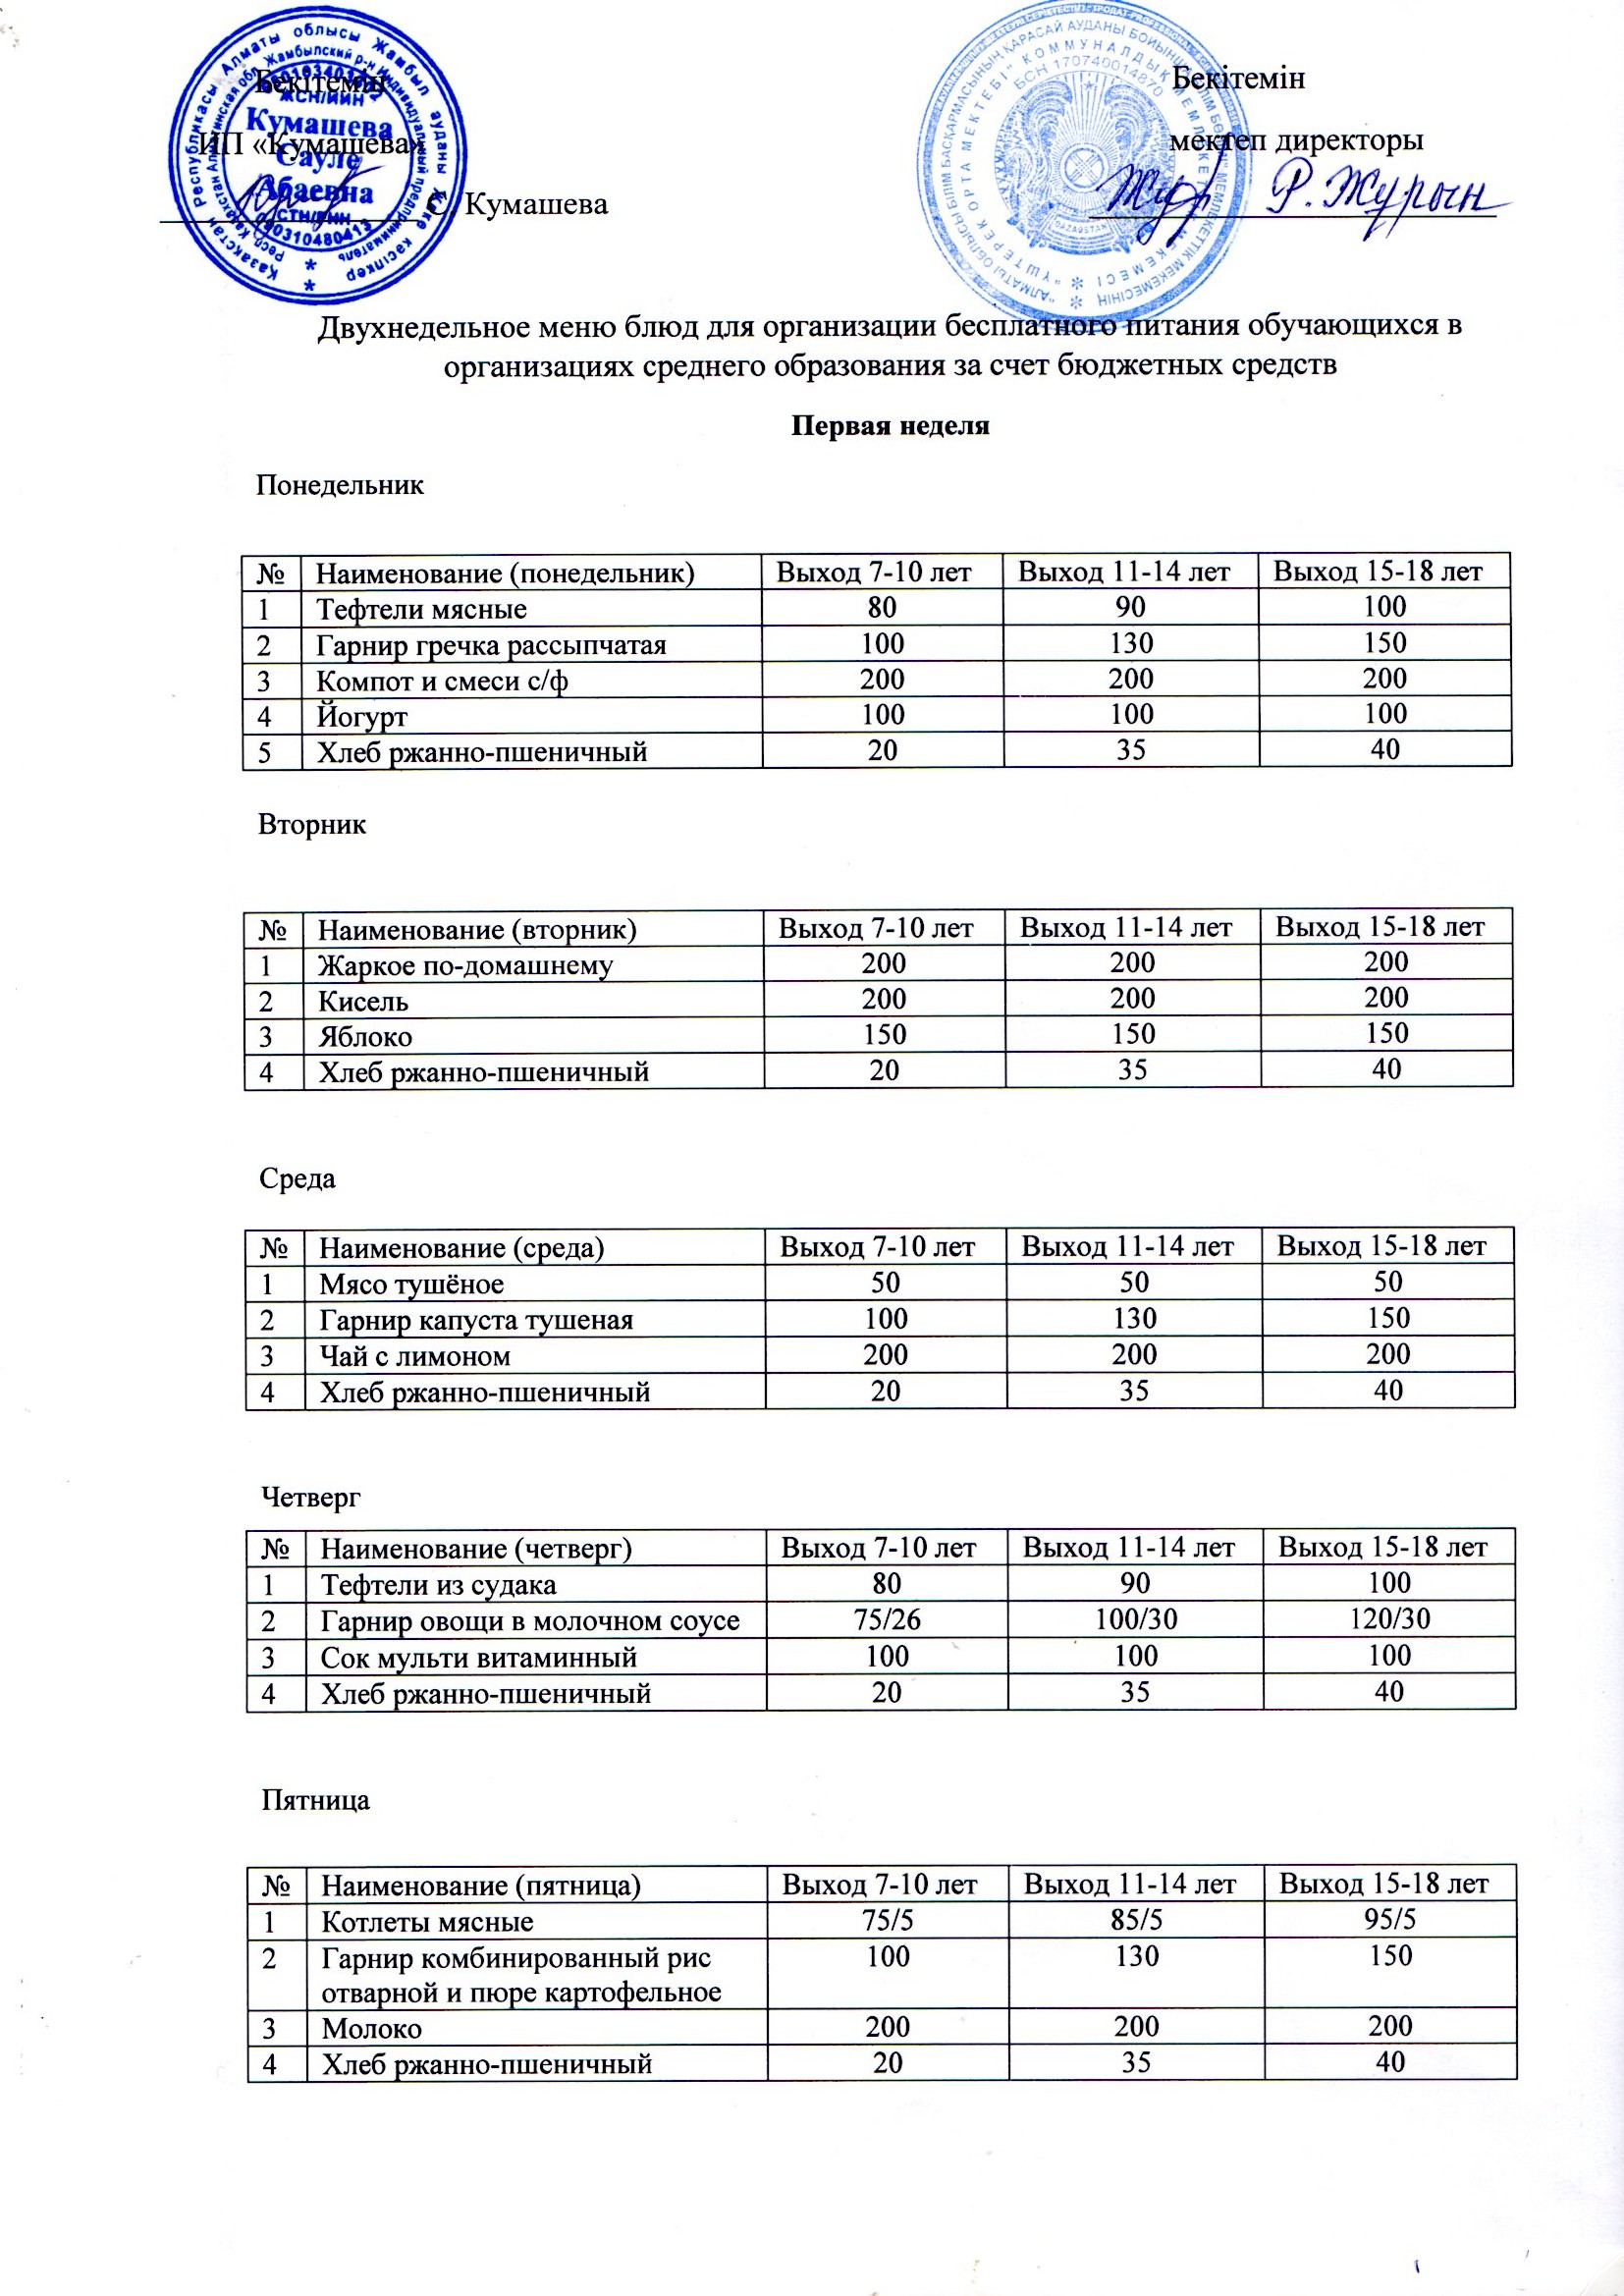 «Үштерек орта мектебі» Education Department of Kerbulak districtндегі асханадағы ұйымдастырылған жұмыс туралы анықтама